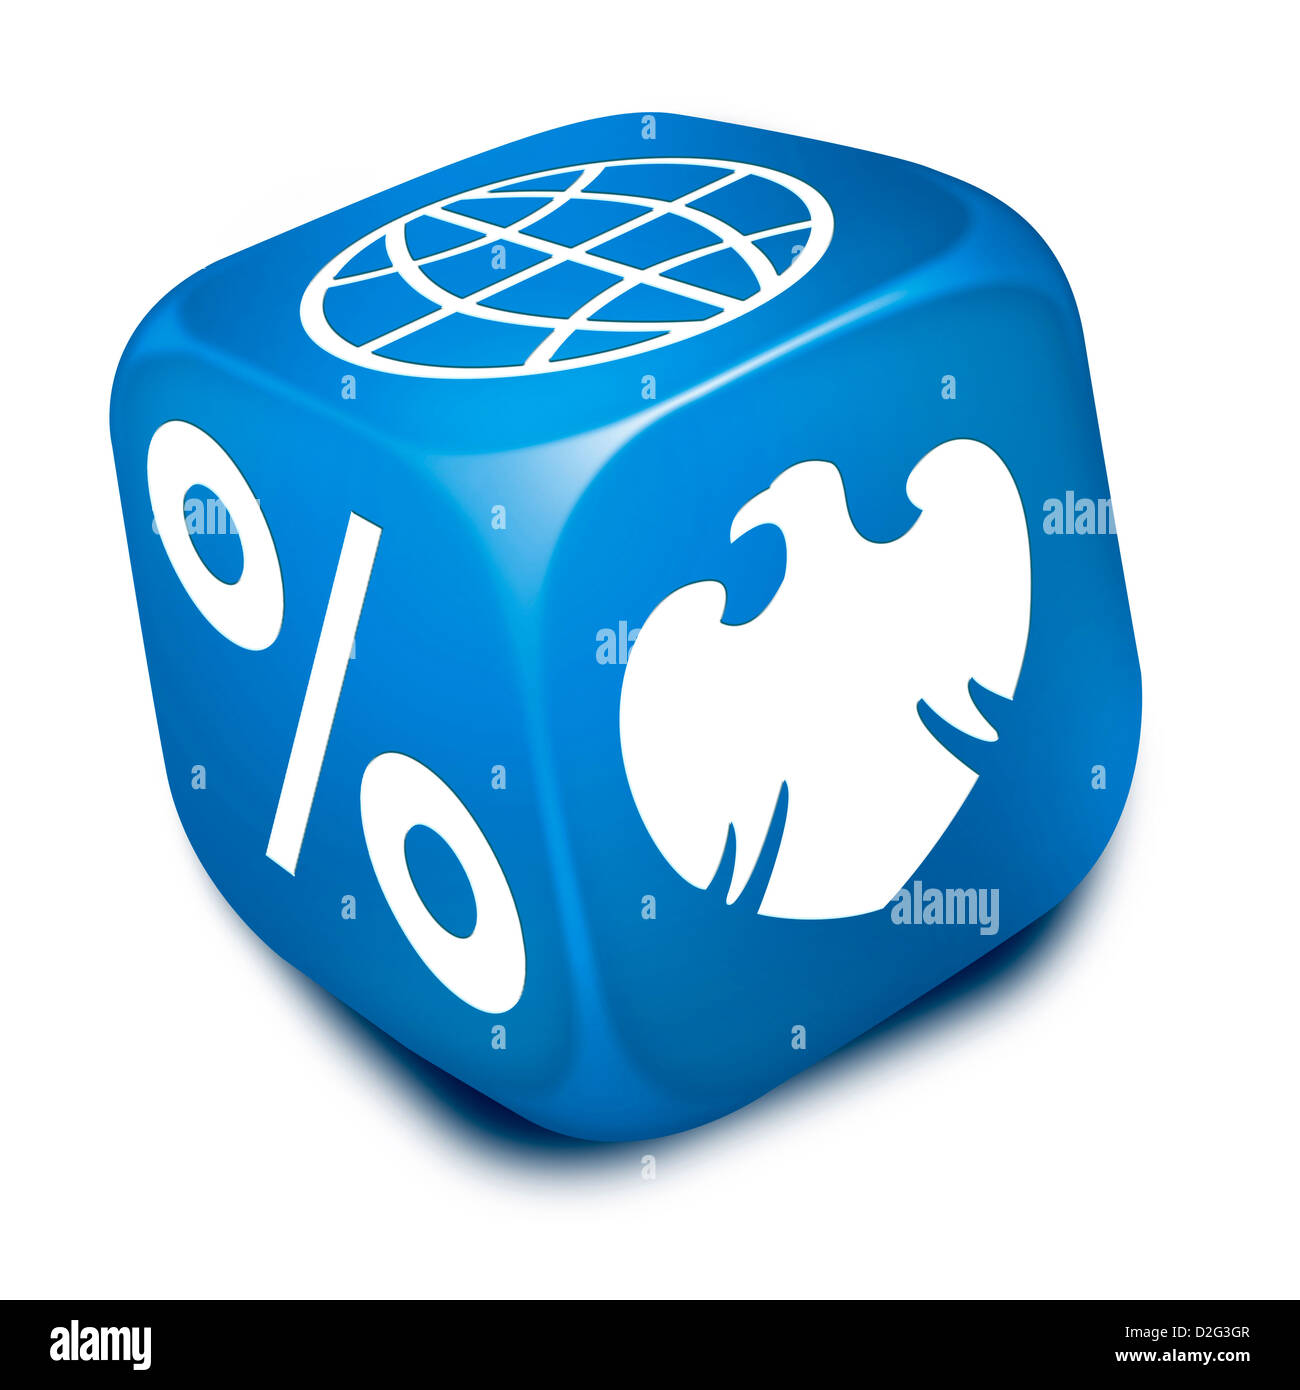 Blaue Würfel mit Barclays Bank Eagle Symbol, Prozentsatz und Welt / globe Symbole auf Gesichter - Konzept Bild Stockfoto